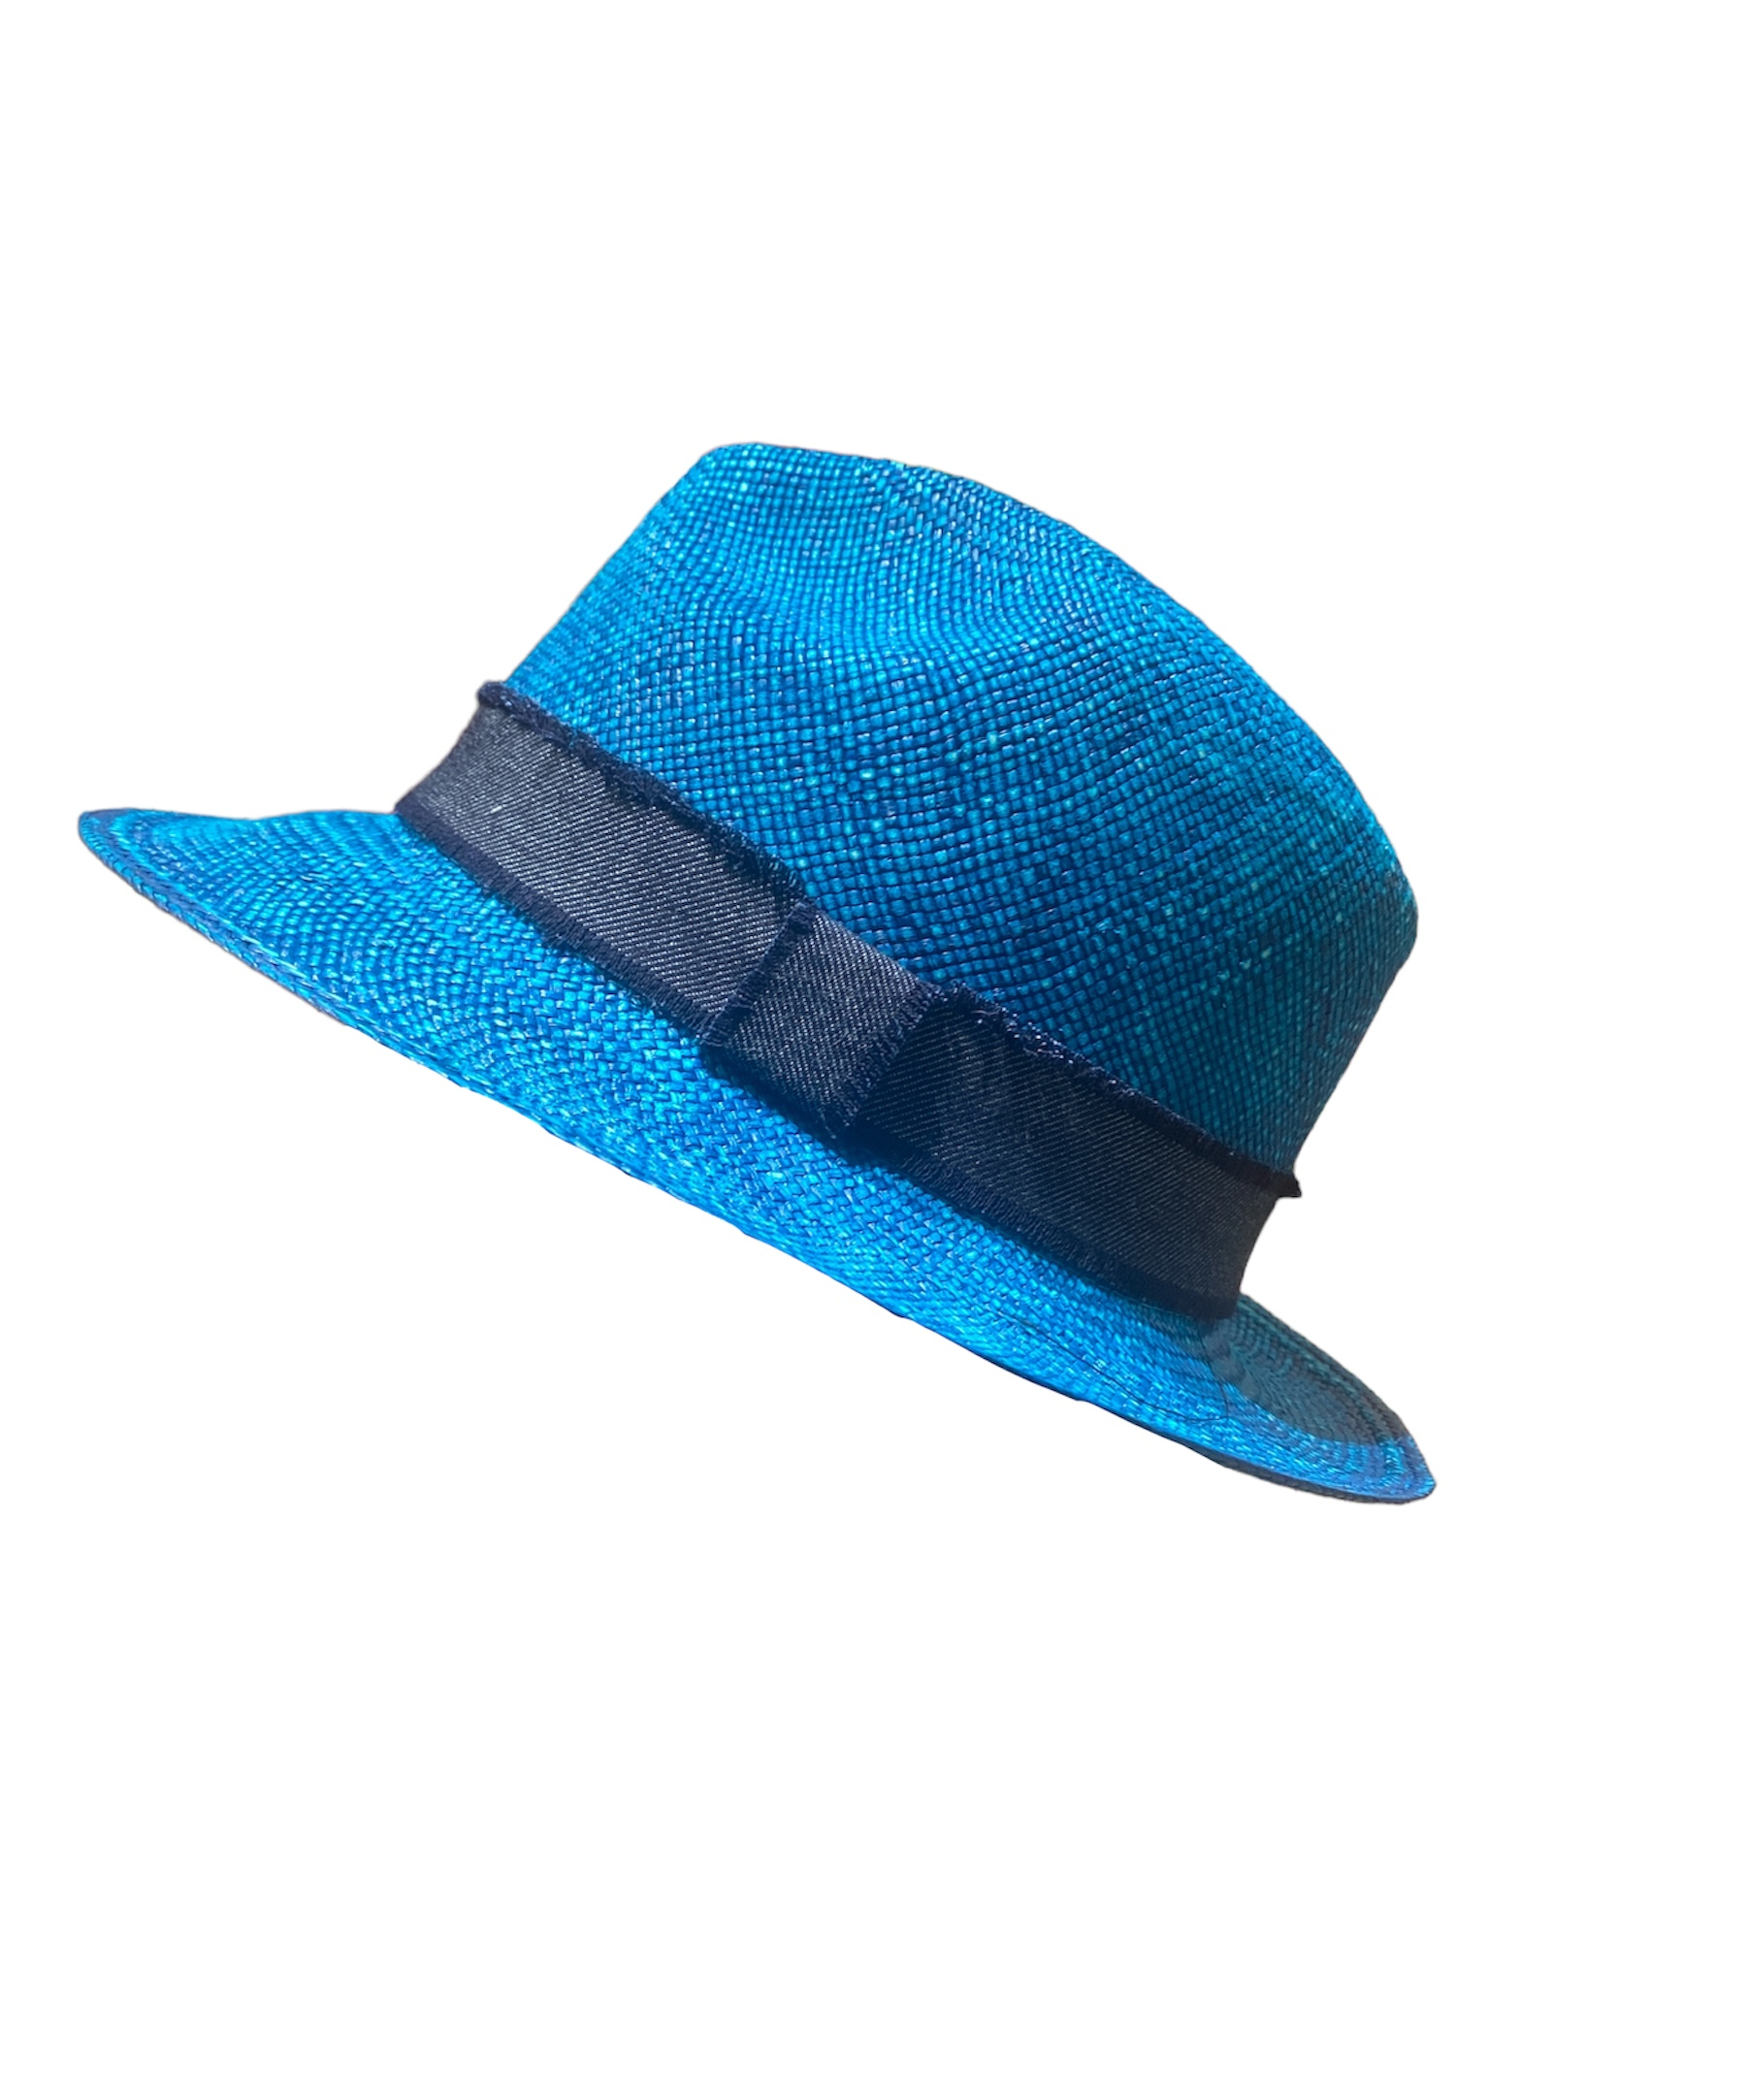 Chapeau Panama bleu, disponible en taille 55, 57, 59, 61 et 62